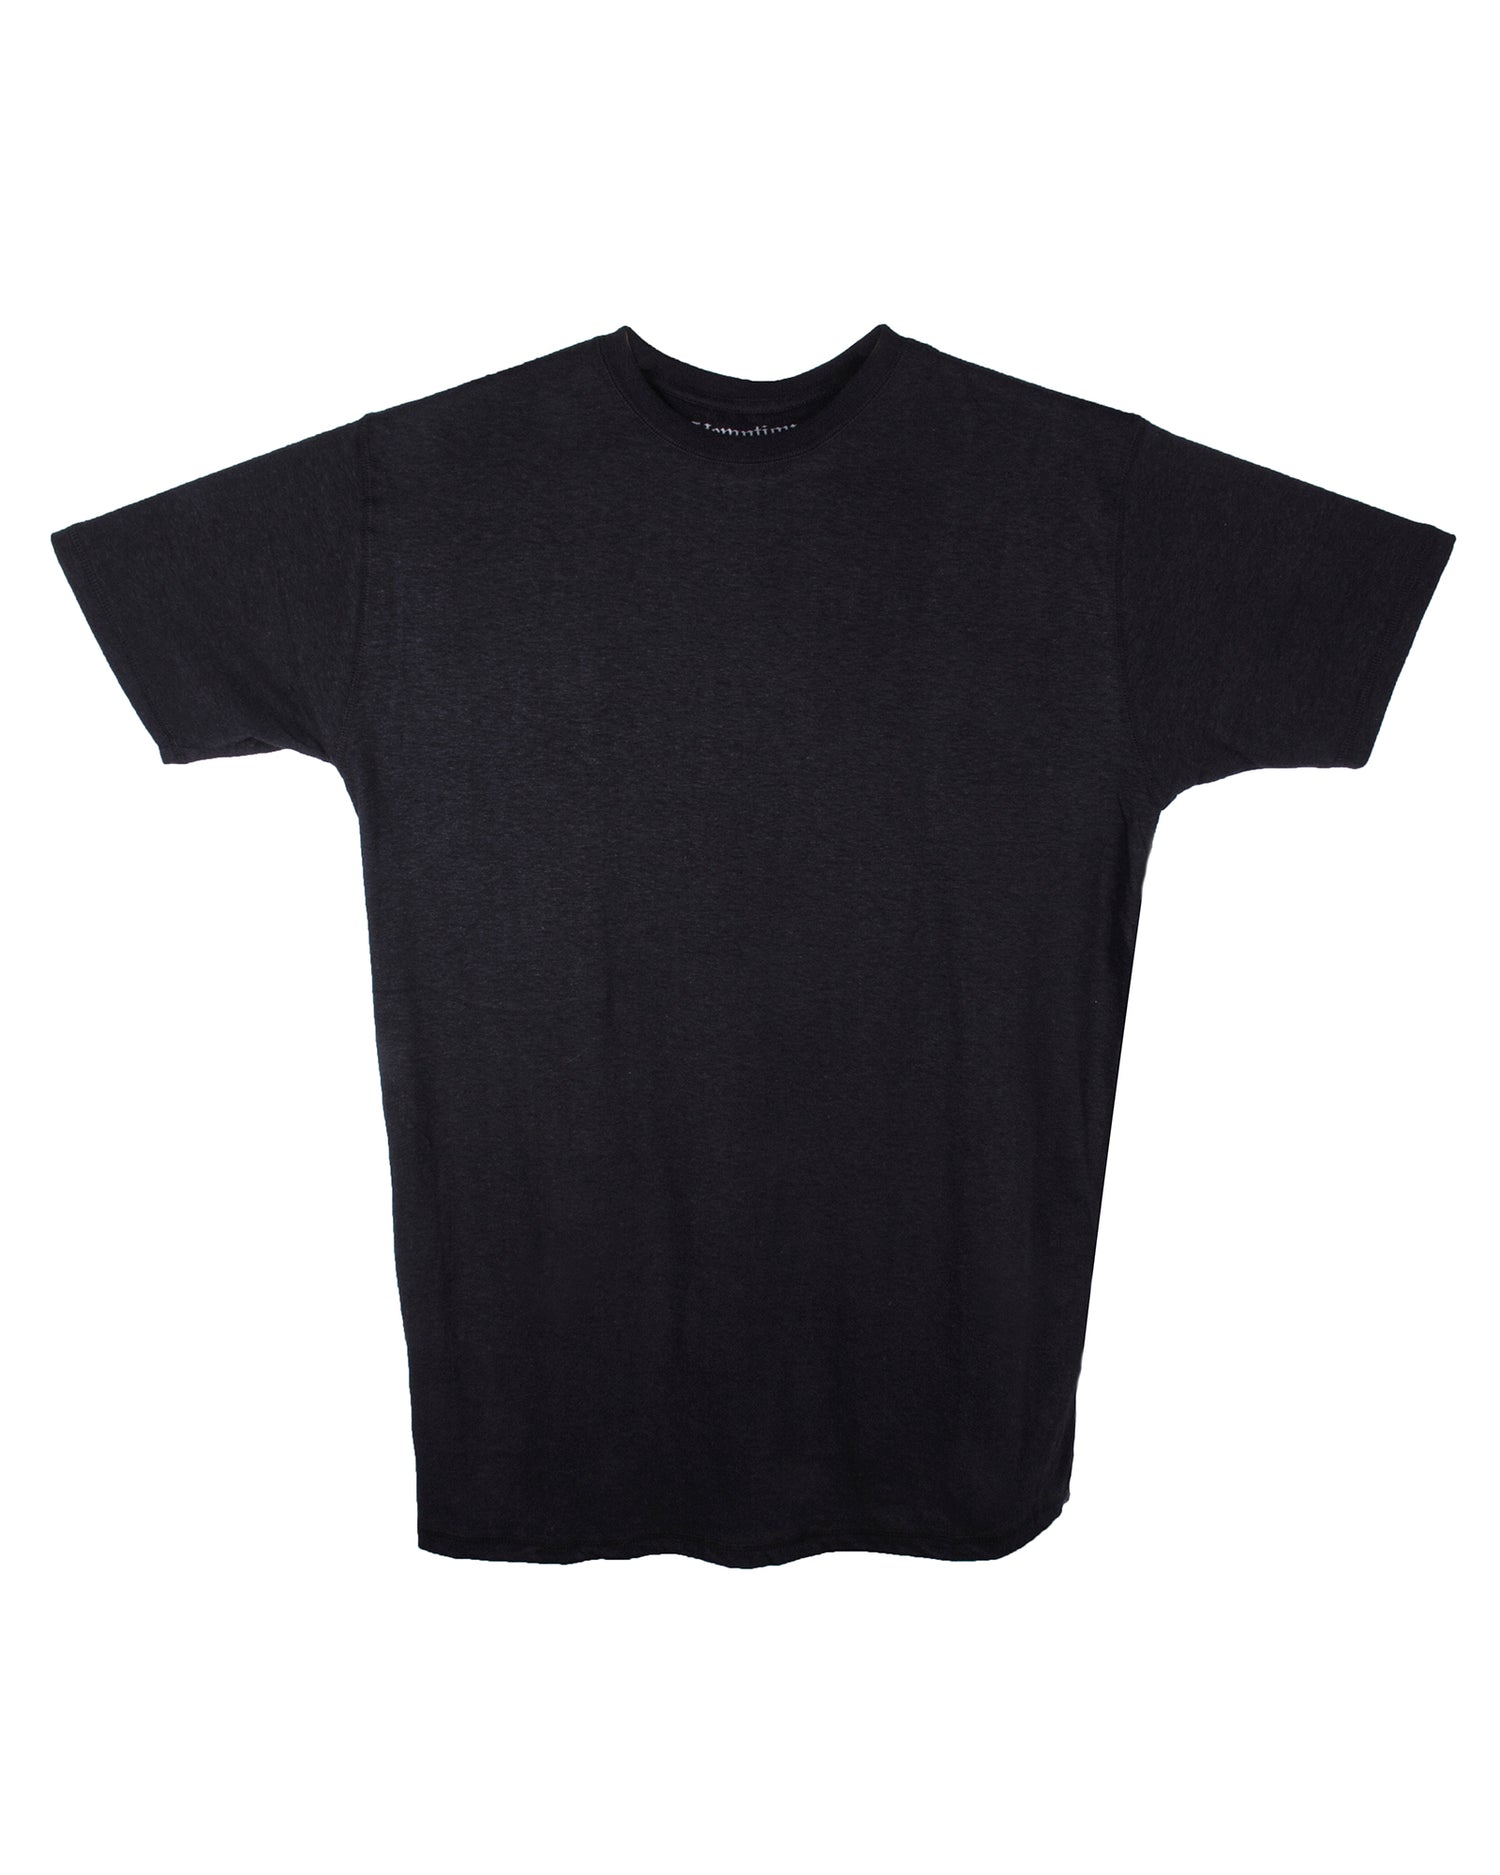 Hemptique Hemp Blank T-Shirts - Cotton/Hemp T-shirt